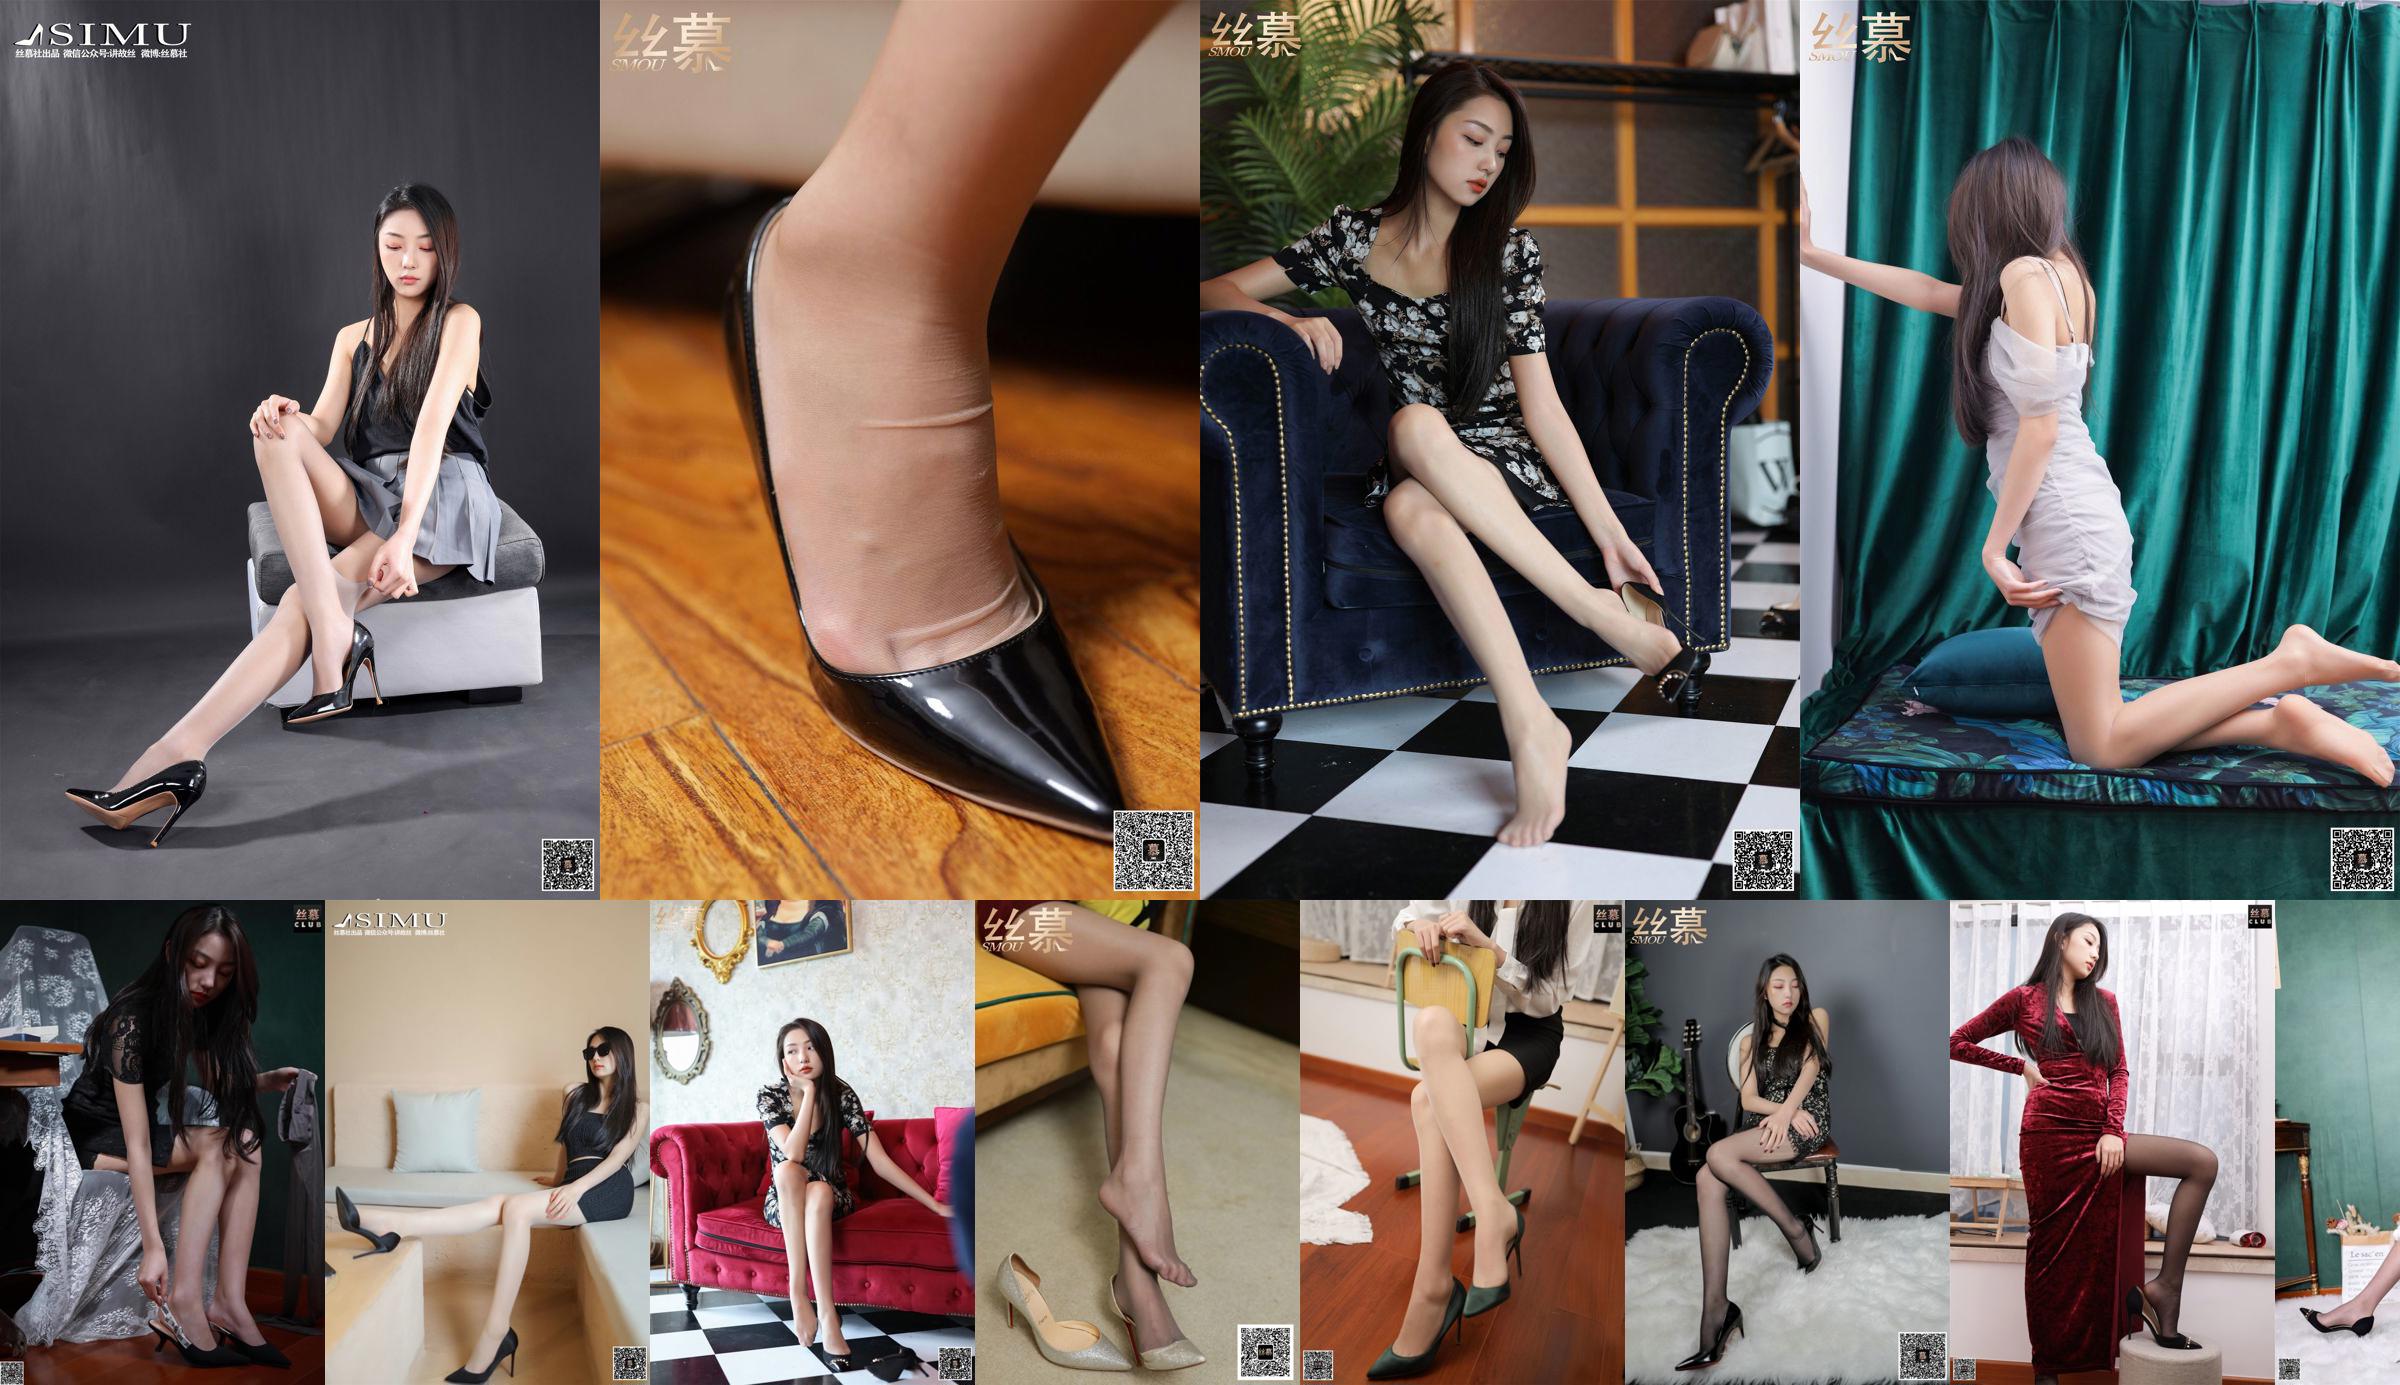 [SMOU] SM443 Shiqing "Shine's Flat Shoes" No.a8a1ea Page 1